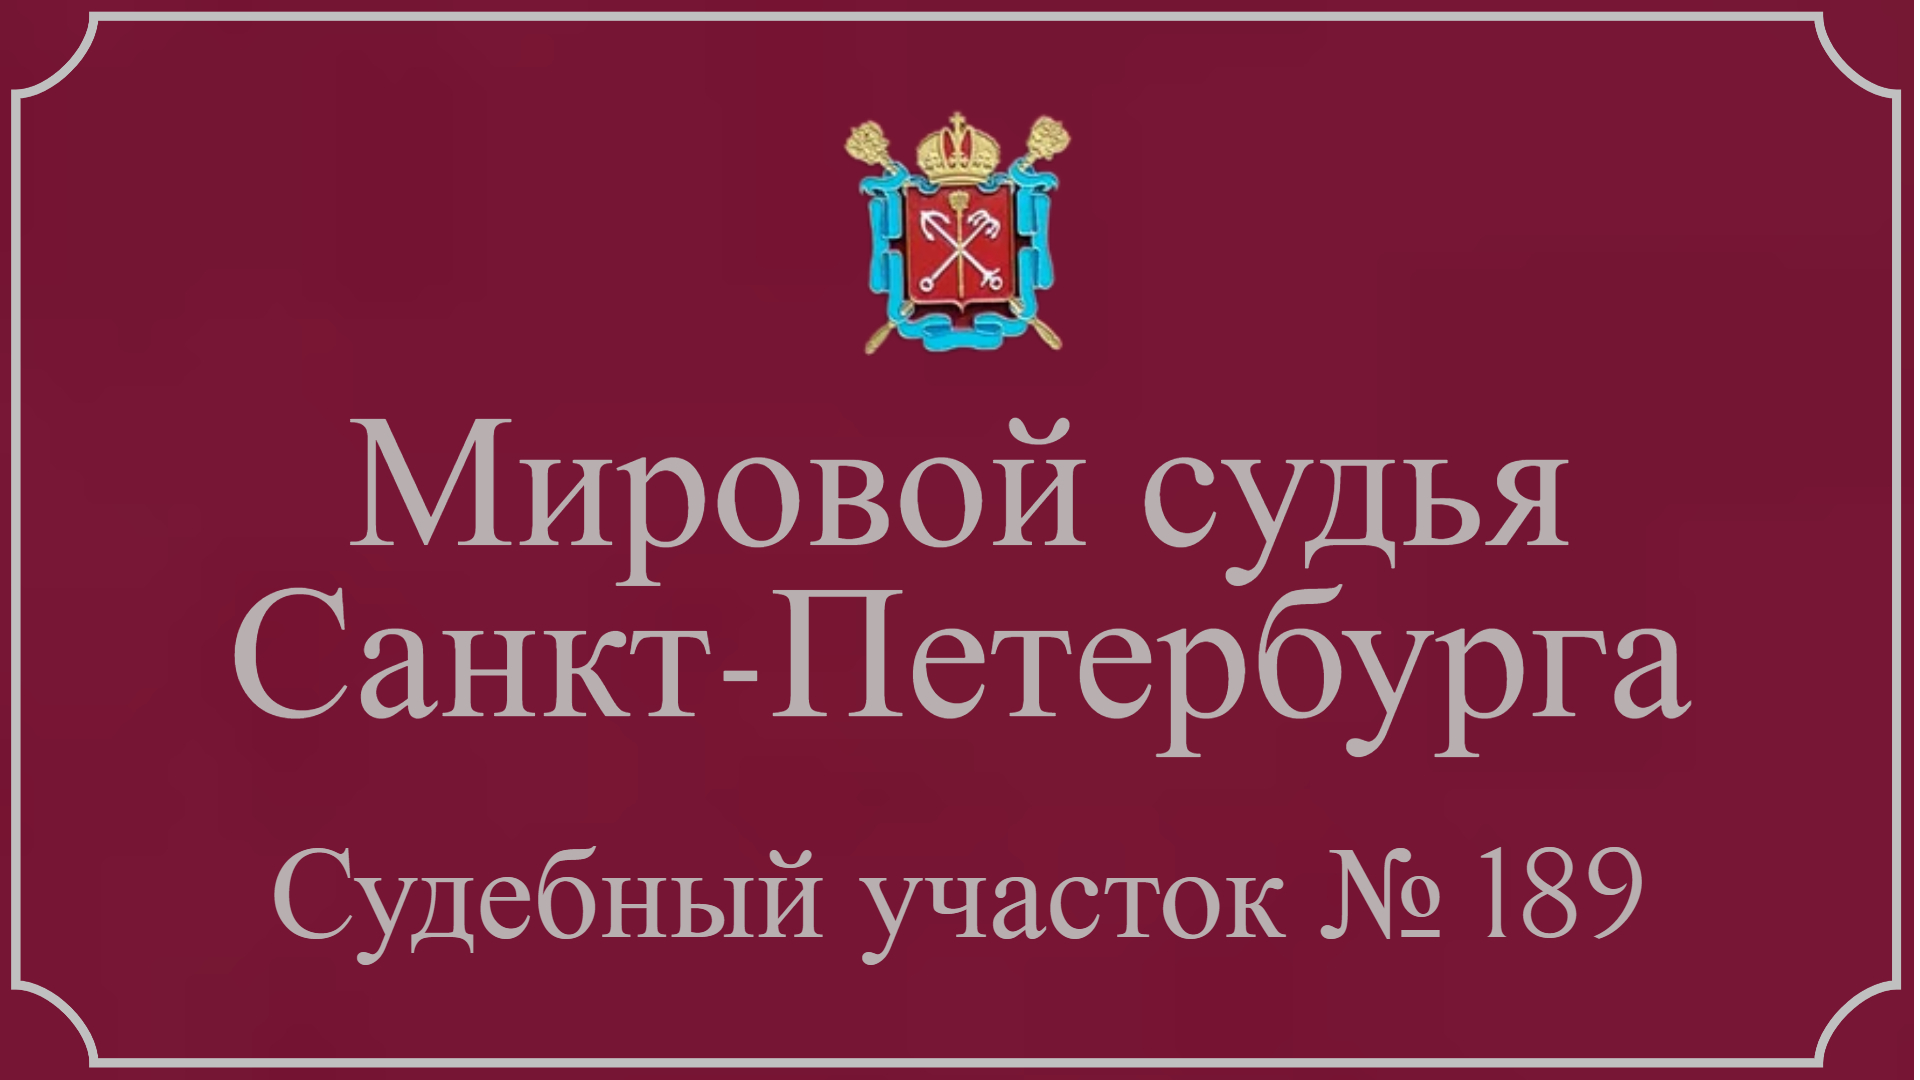 Информация по 189 судебному участку в Санкт-Петербурге.